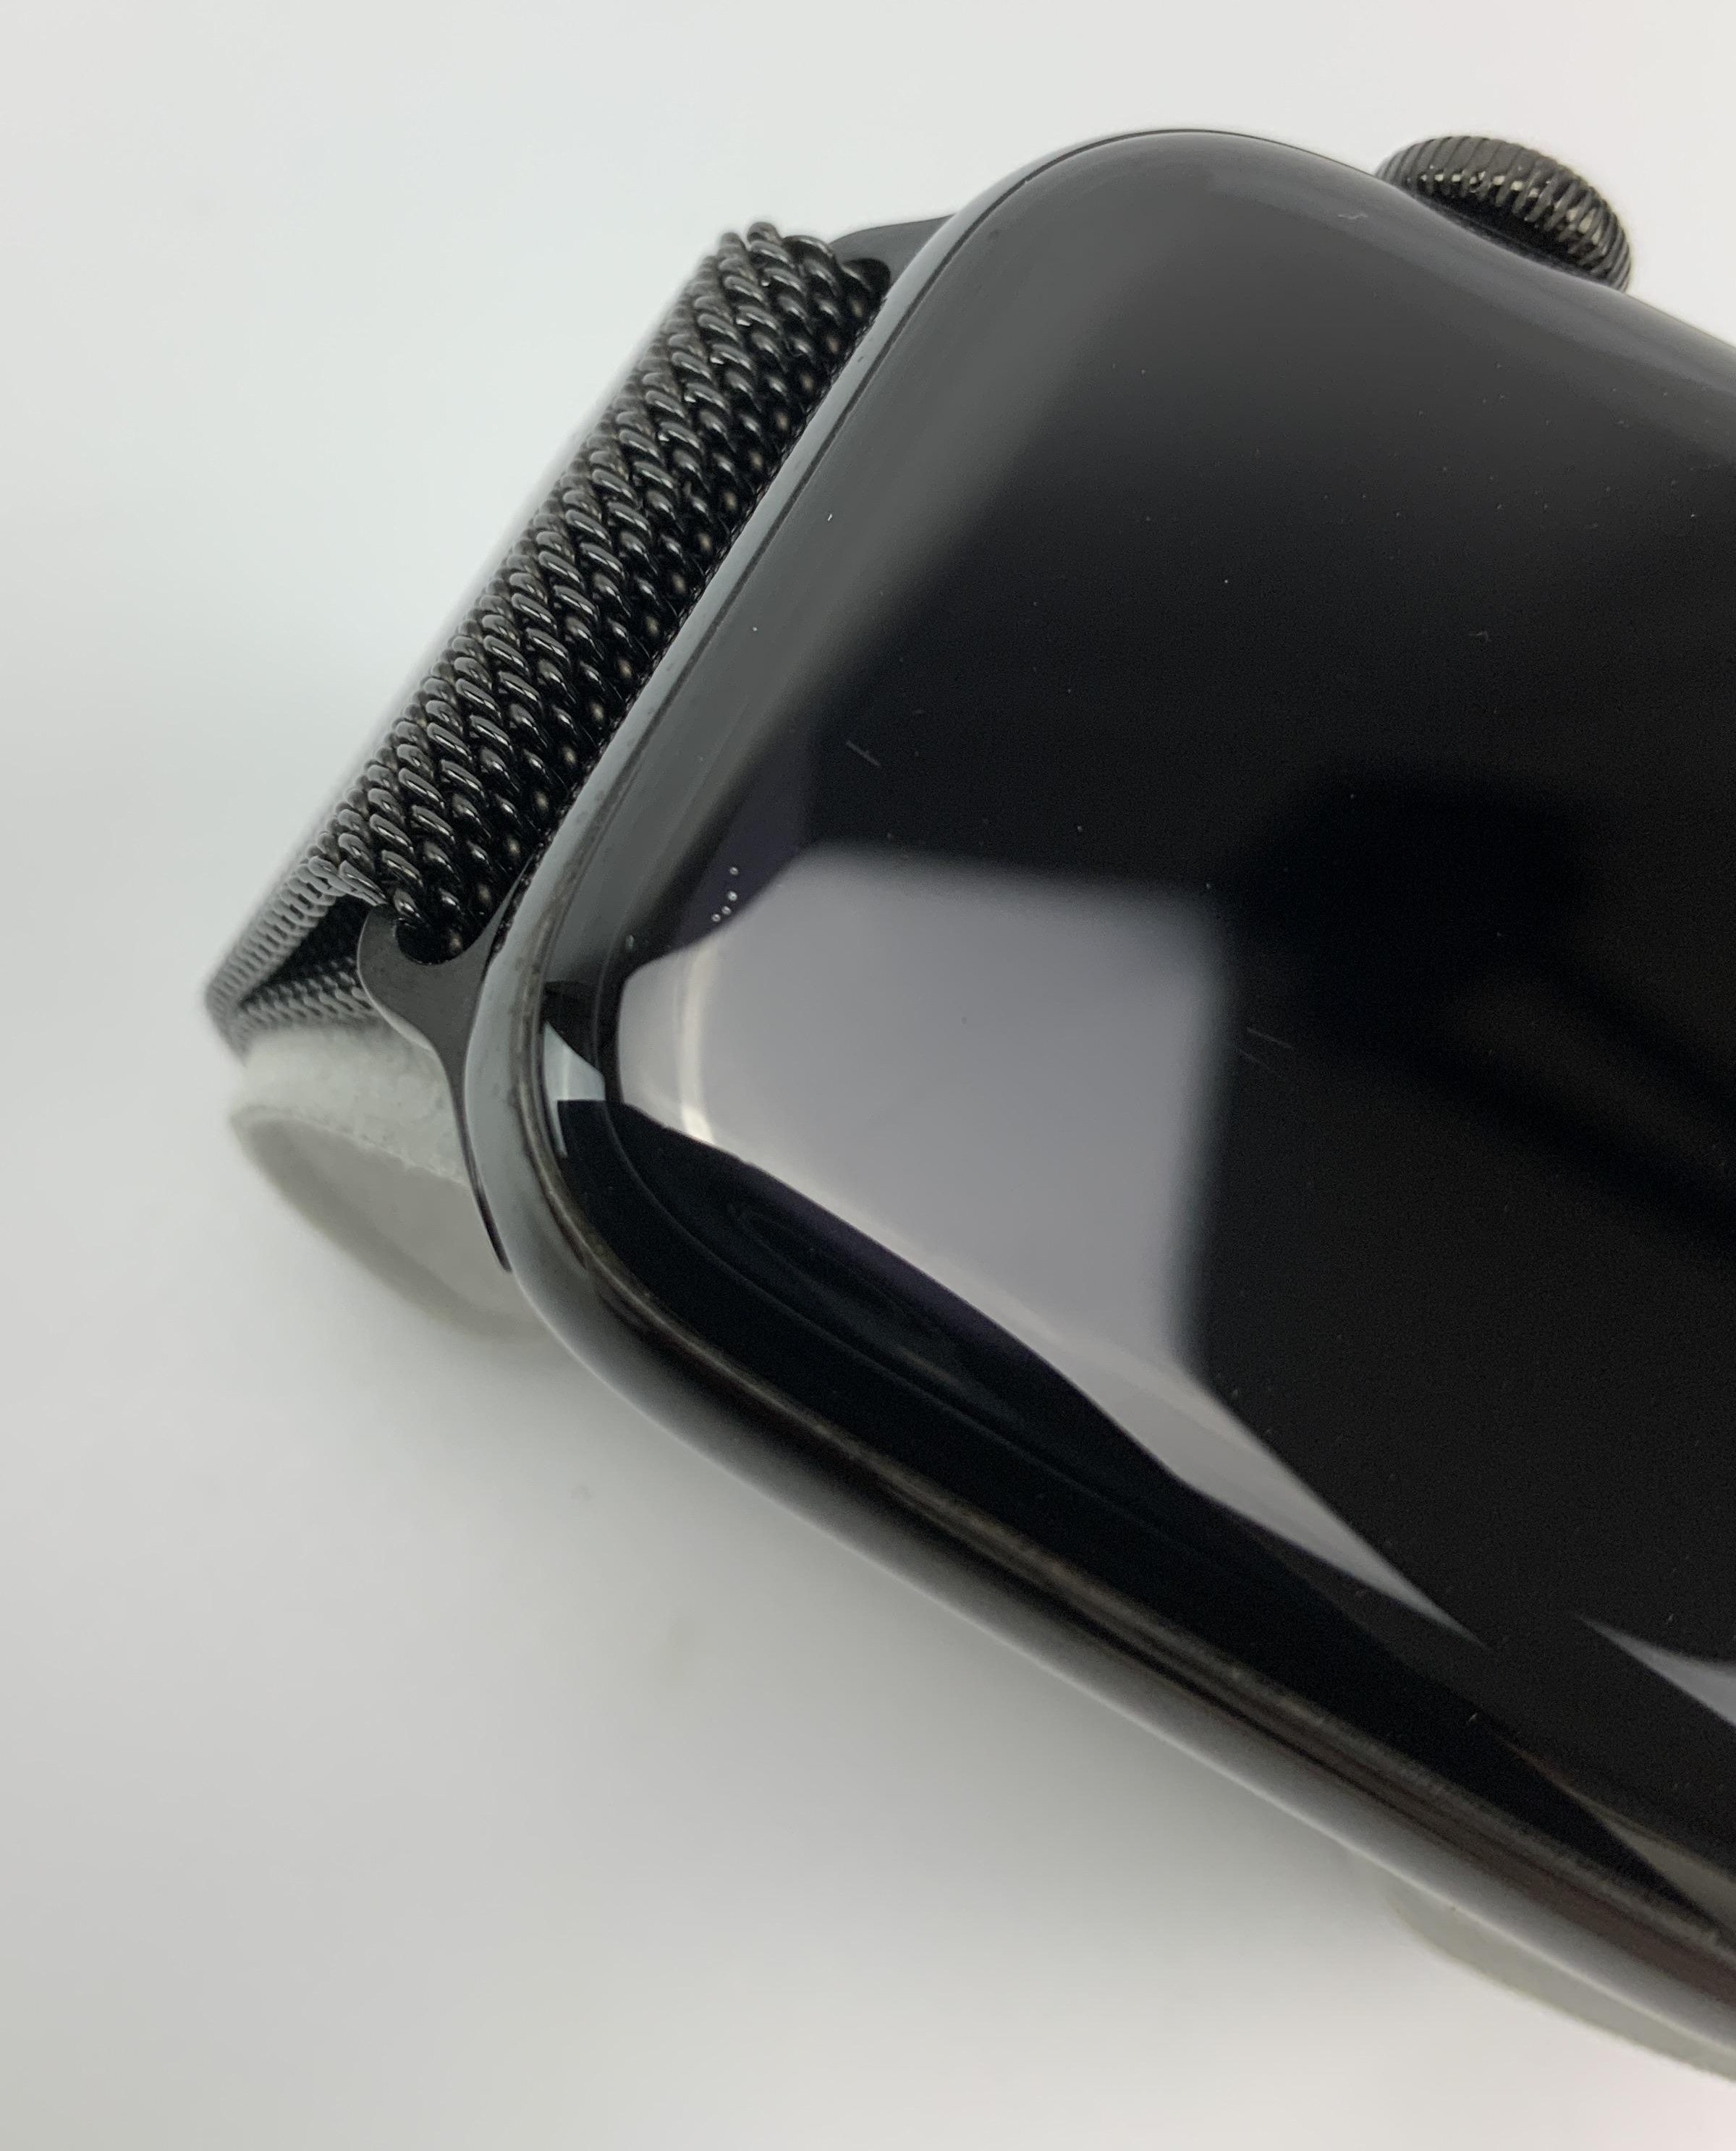 Watch Series 4 Steel Cellular (44mm), Space Black, Space Black Milanese Loop, obraz 4